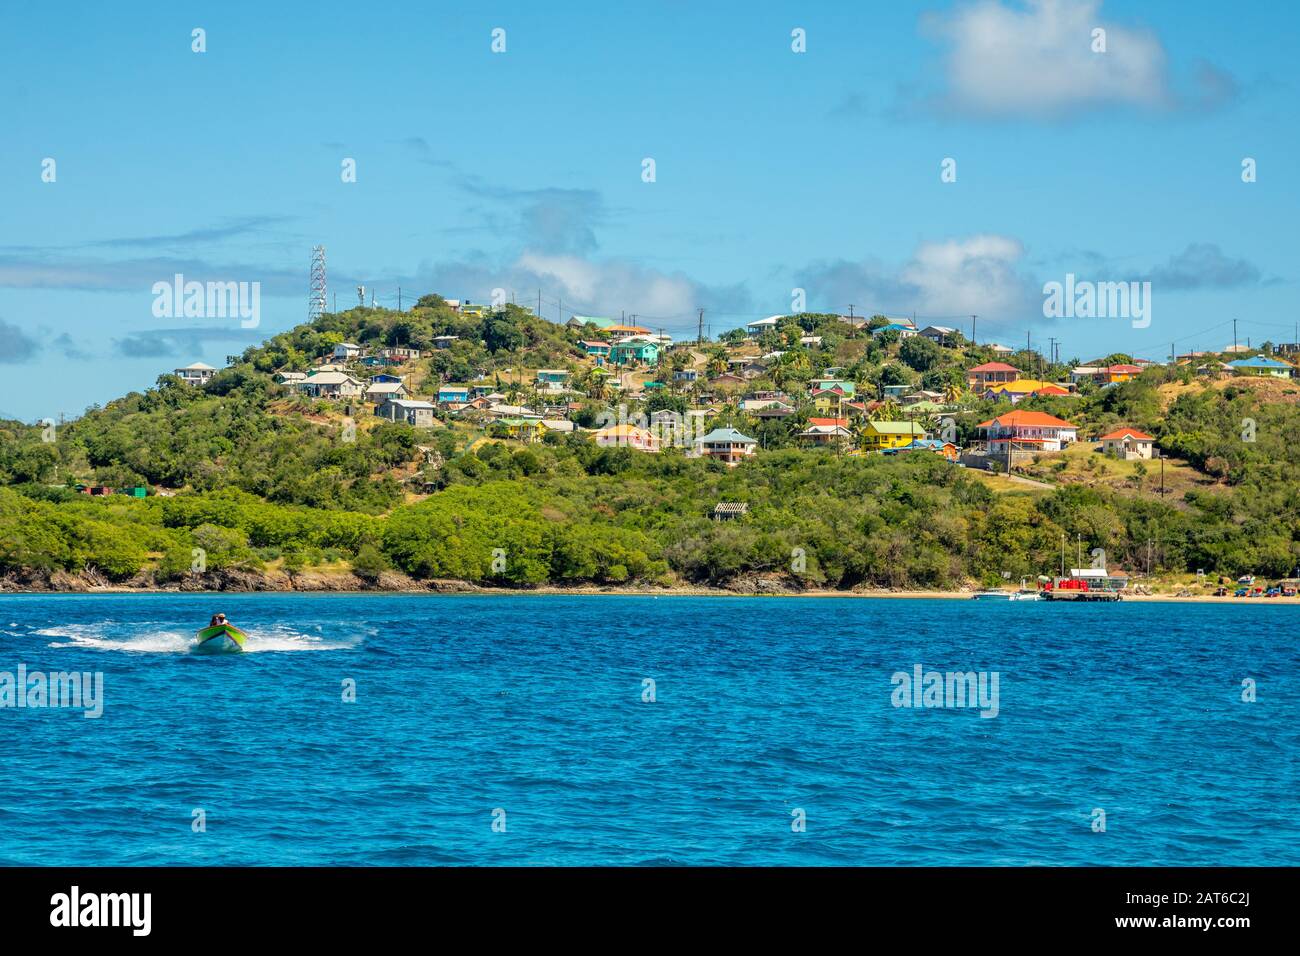 Casas residenciales en la bahía, panorama de la isla Mayreau, San Vicente y las Granadinas Foto de stock